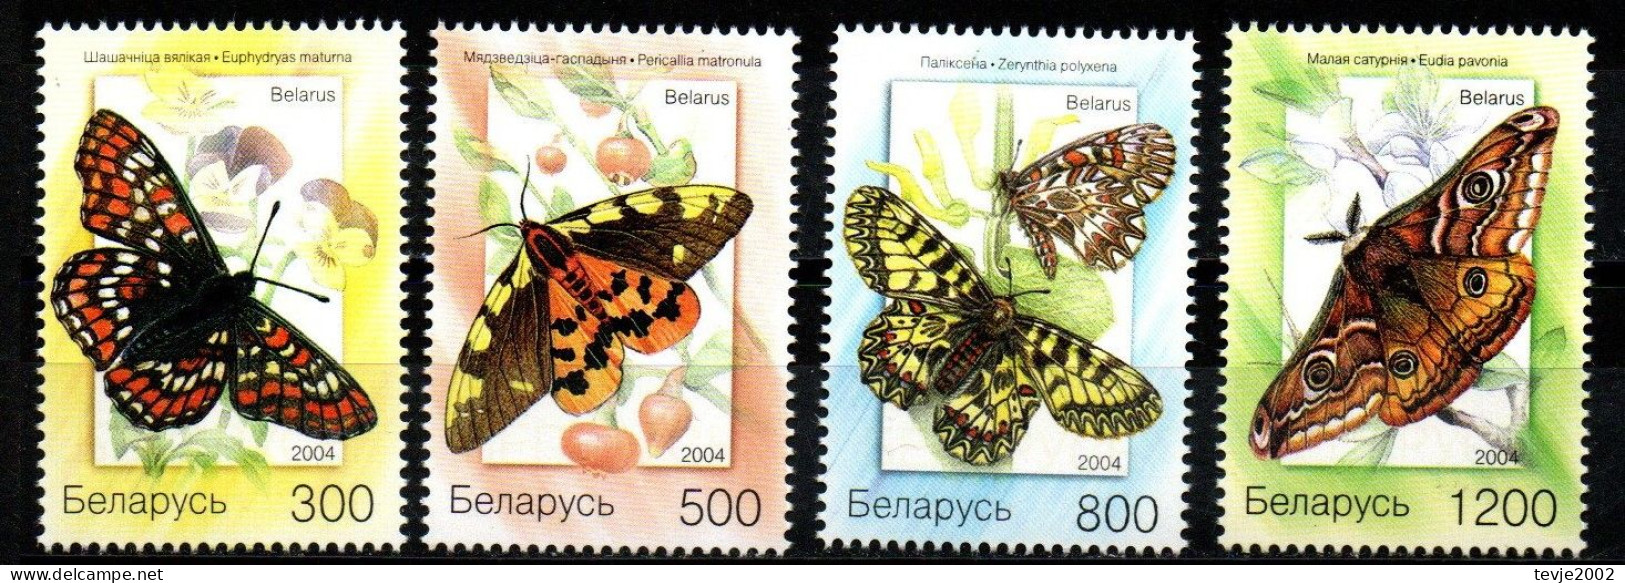 Weißrussland Belarus 2004 - Mi.Nr. 557 - 560 - Postfrisch MNH - Tiere Animals Schmetterlinge Butterflies - Papillons